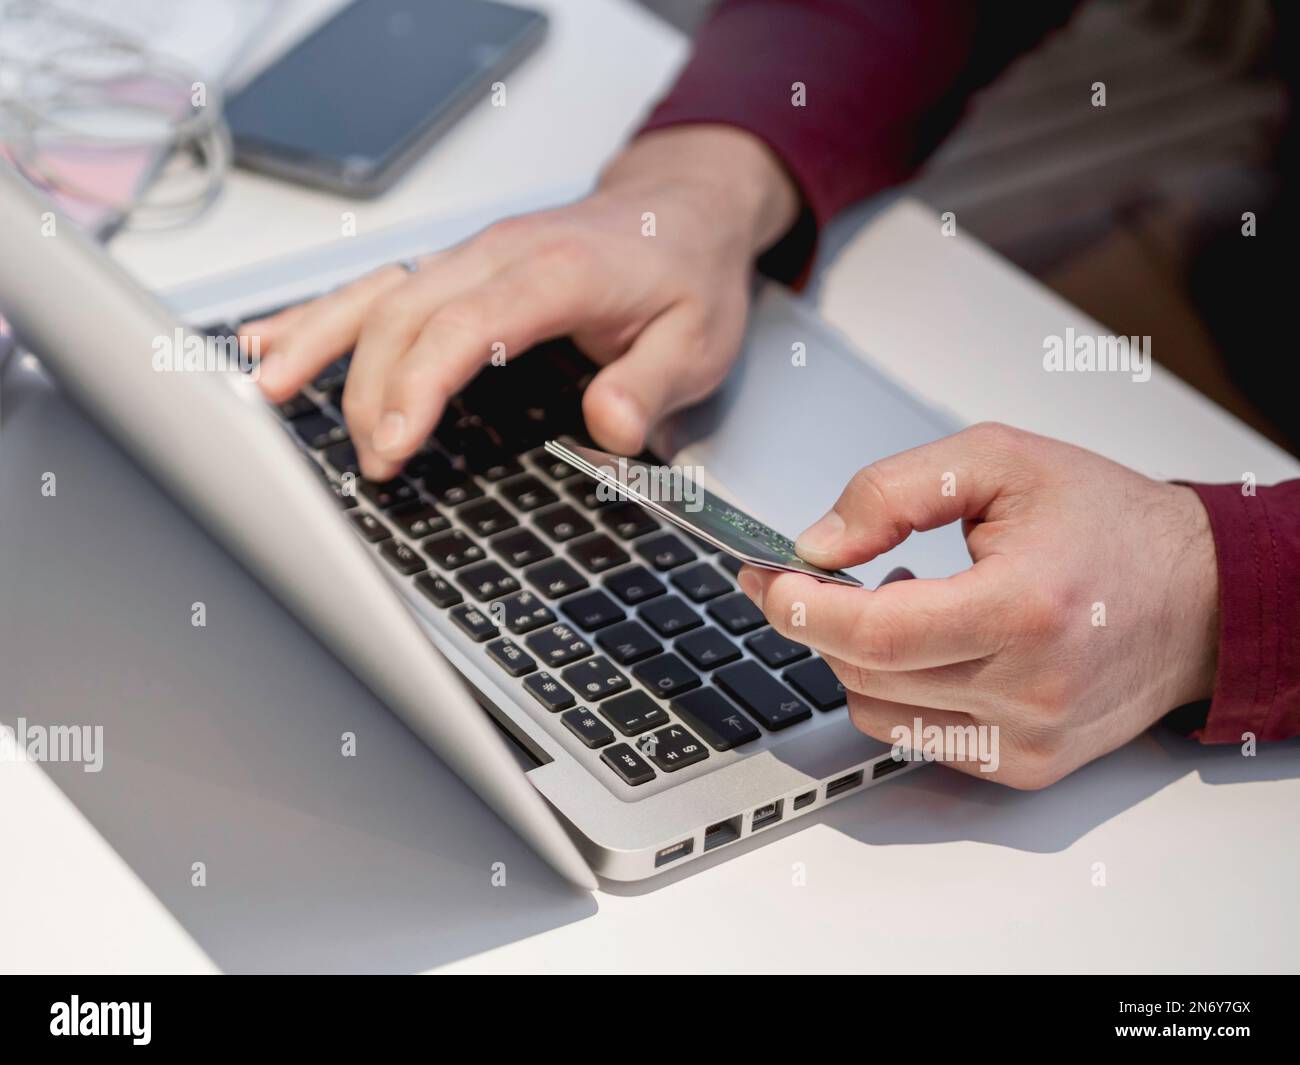 Mann verwendet Laptop, um für Online-Bestellung per Kreditkarte zu bezahlen. Online-Shopping oder E-Commerce. Kontaktloses Bezahlen durch drahtlose Technologien. Stockfoto